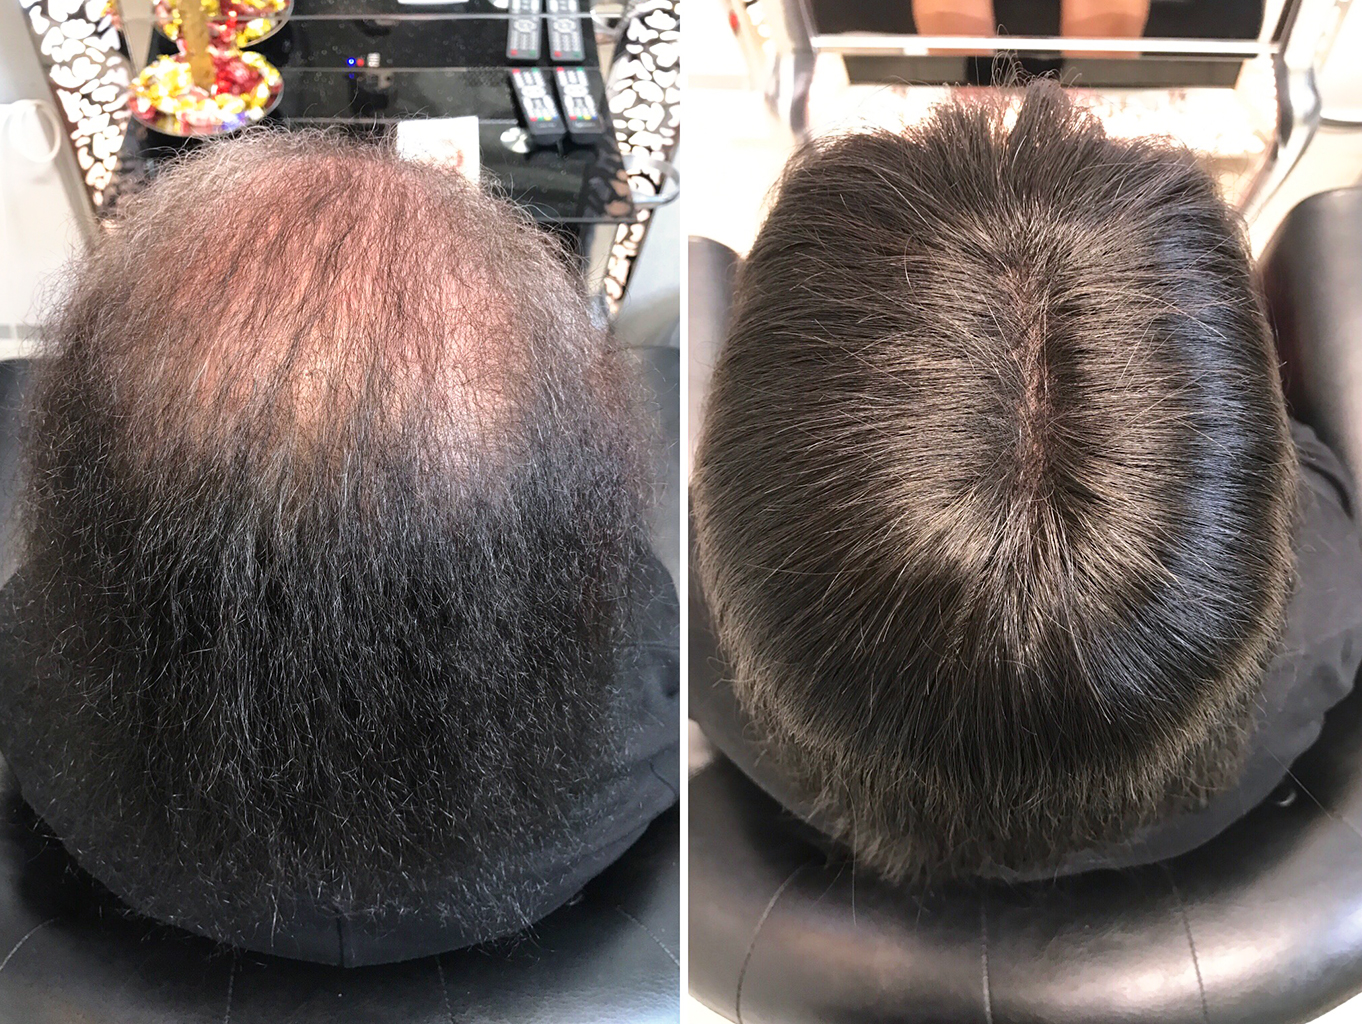 https://hairtalk.ru/wp-content/uploads/2021/12/Нарастили-систему-замещения-волос-Wonder-Fill-основа-16-на-125-см-длина-волос-25-см-тон-1-4.jpg